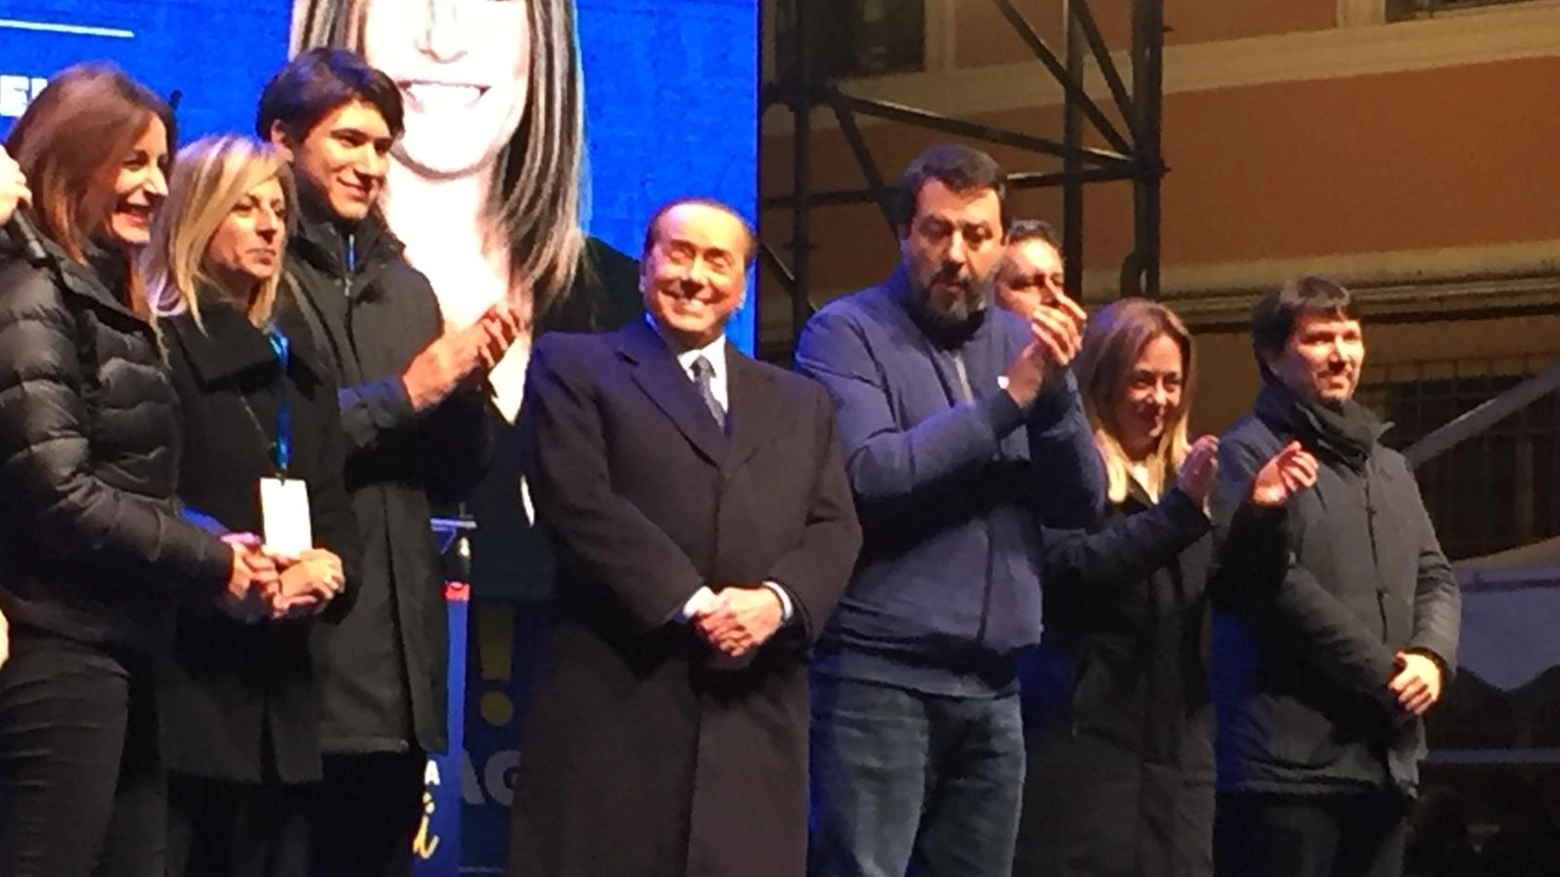 Elezioni, bagno di folla in piazza per i tre leader del centrodestra con Lucia Borgonzoni. A 200 metri di distanza le Sardine: "Siamo in quattromila"